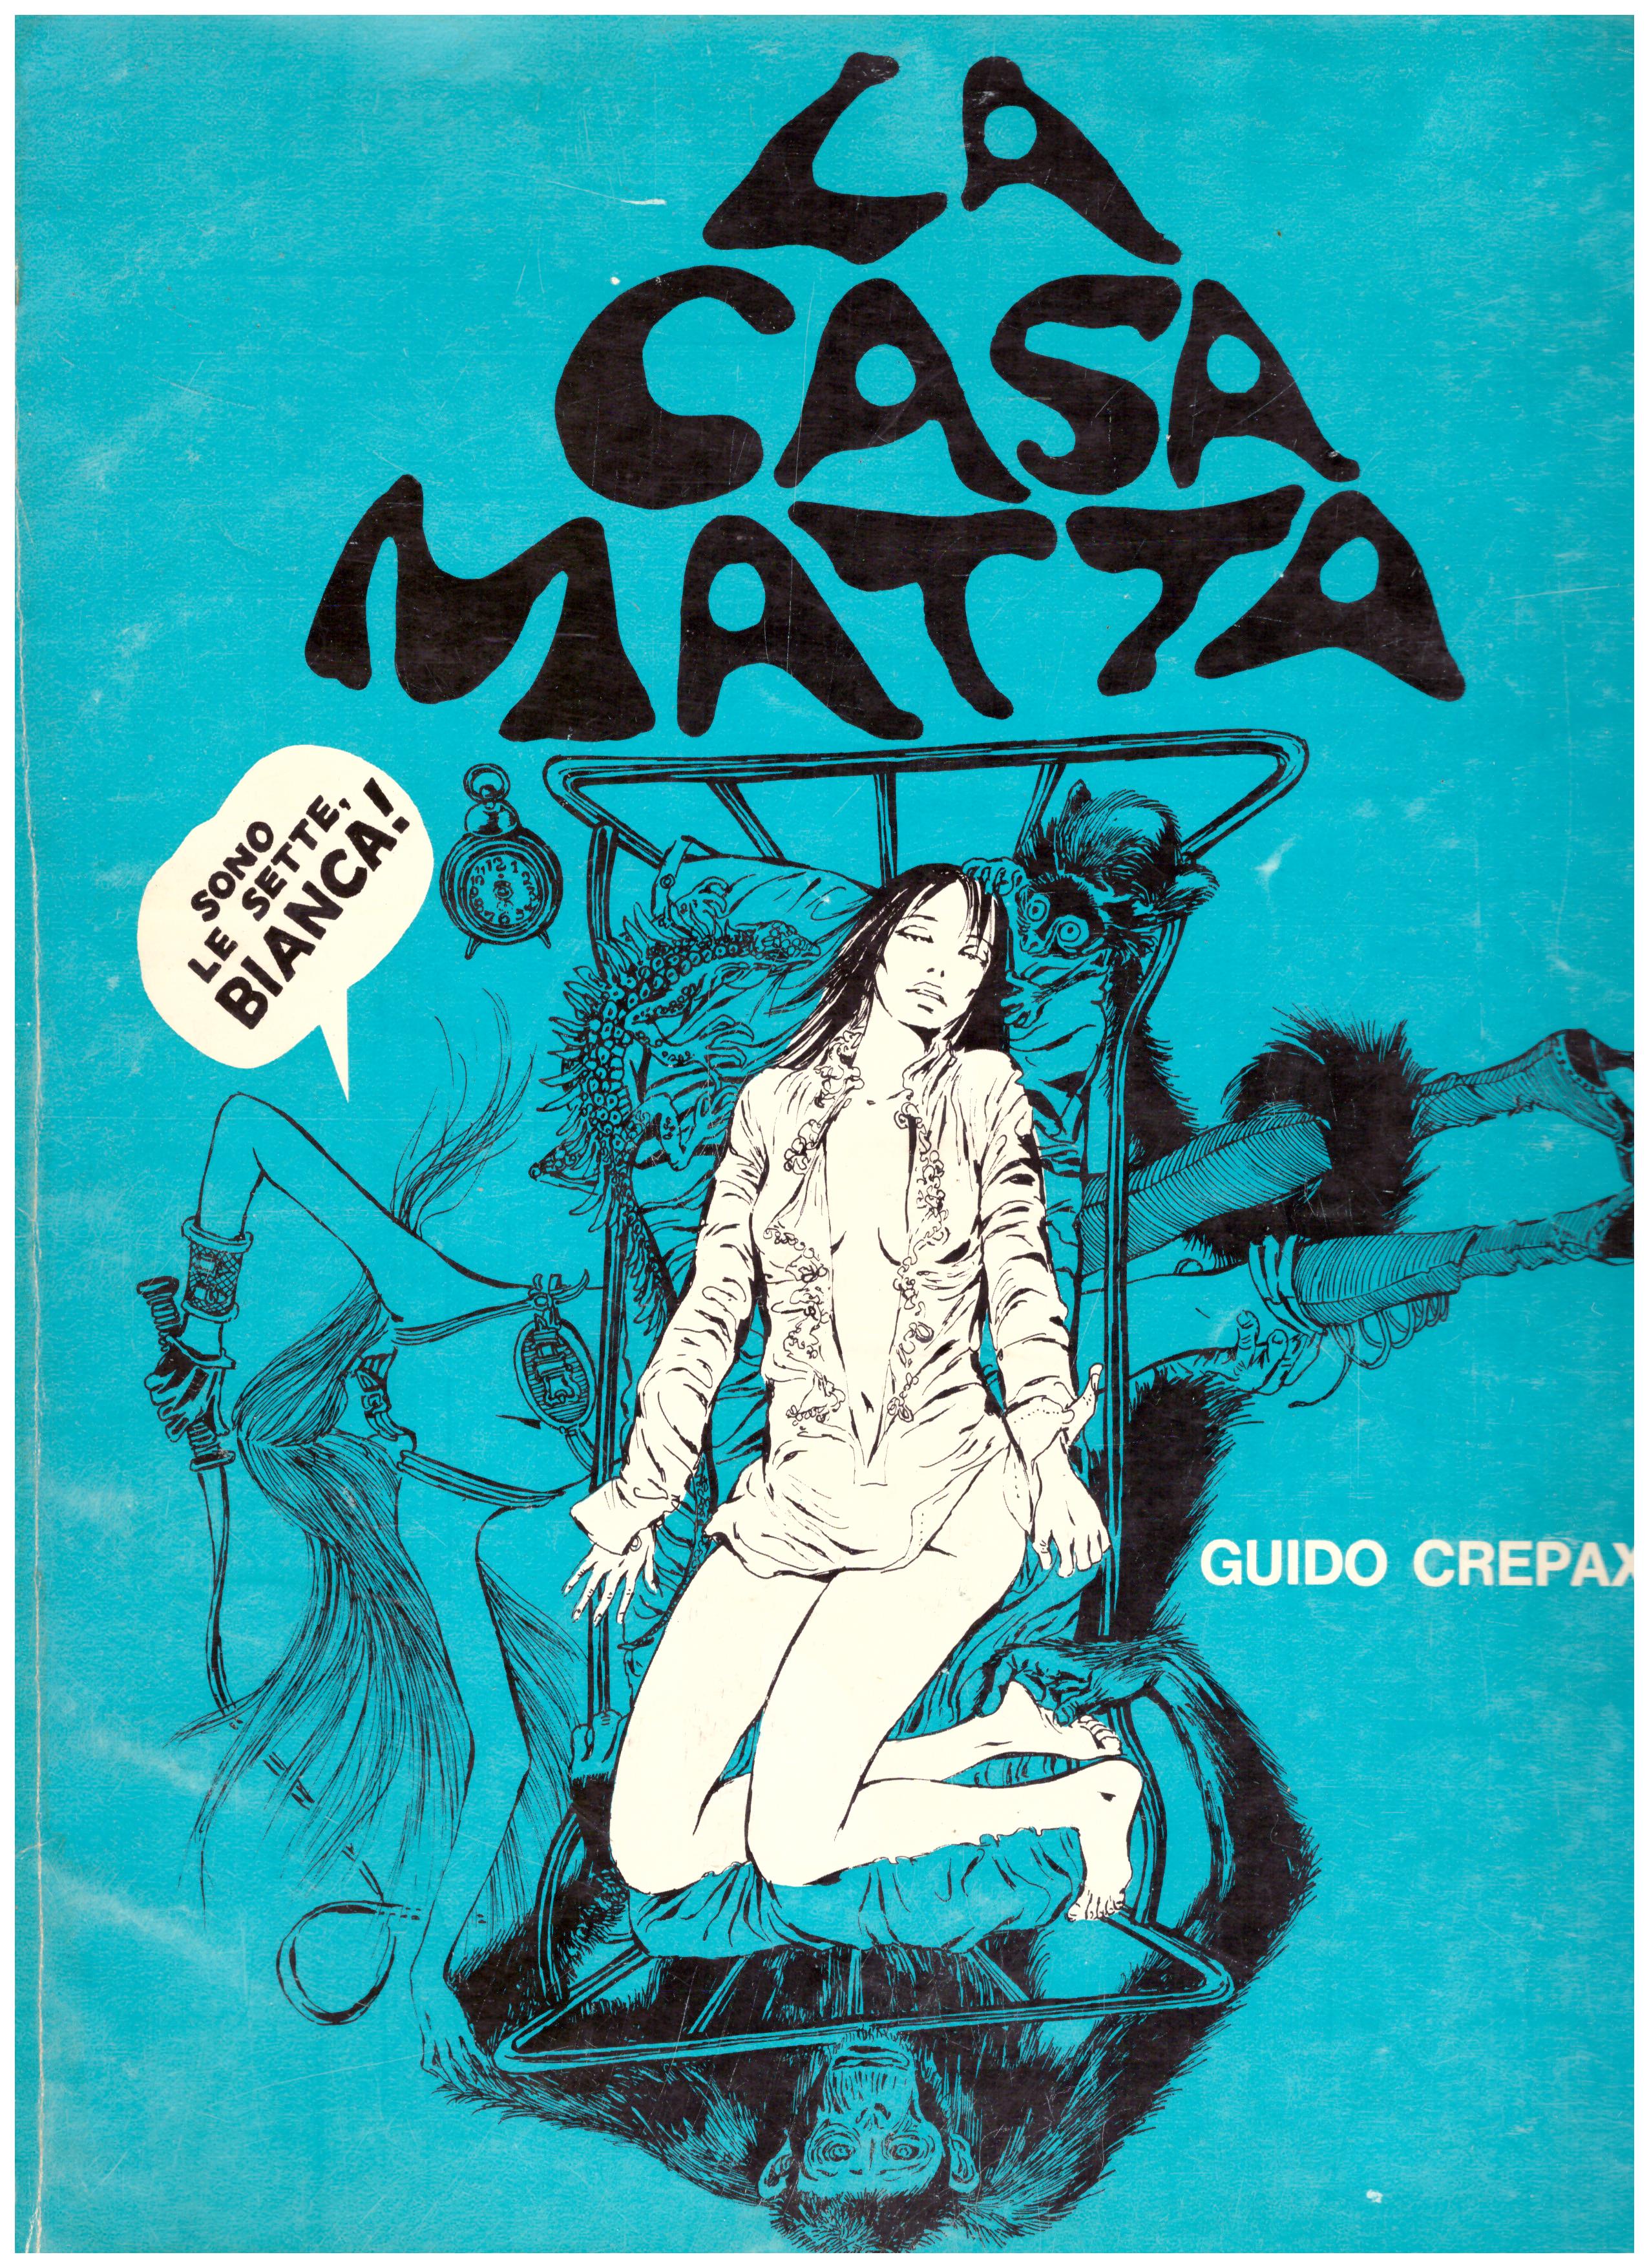 Titolo: La casa matta Autore: Guido Crepax Editore: edip 1969